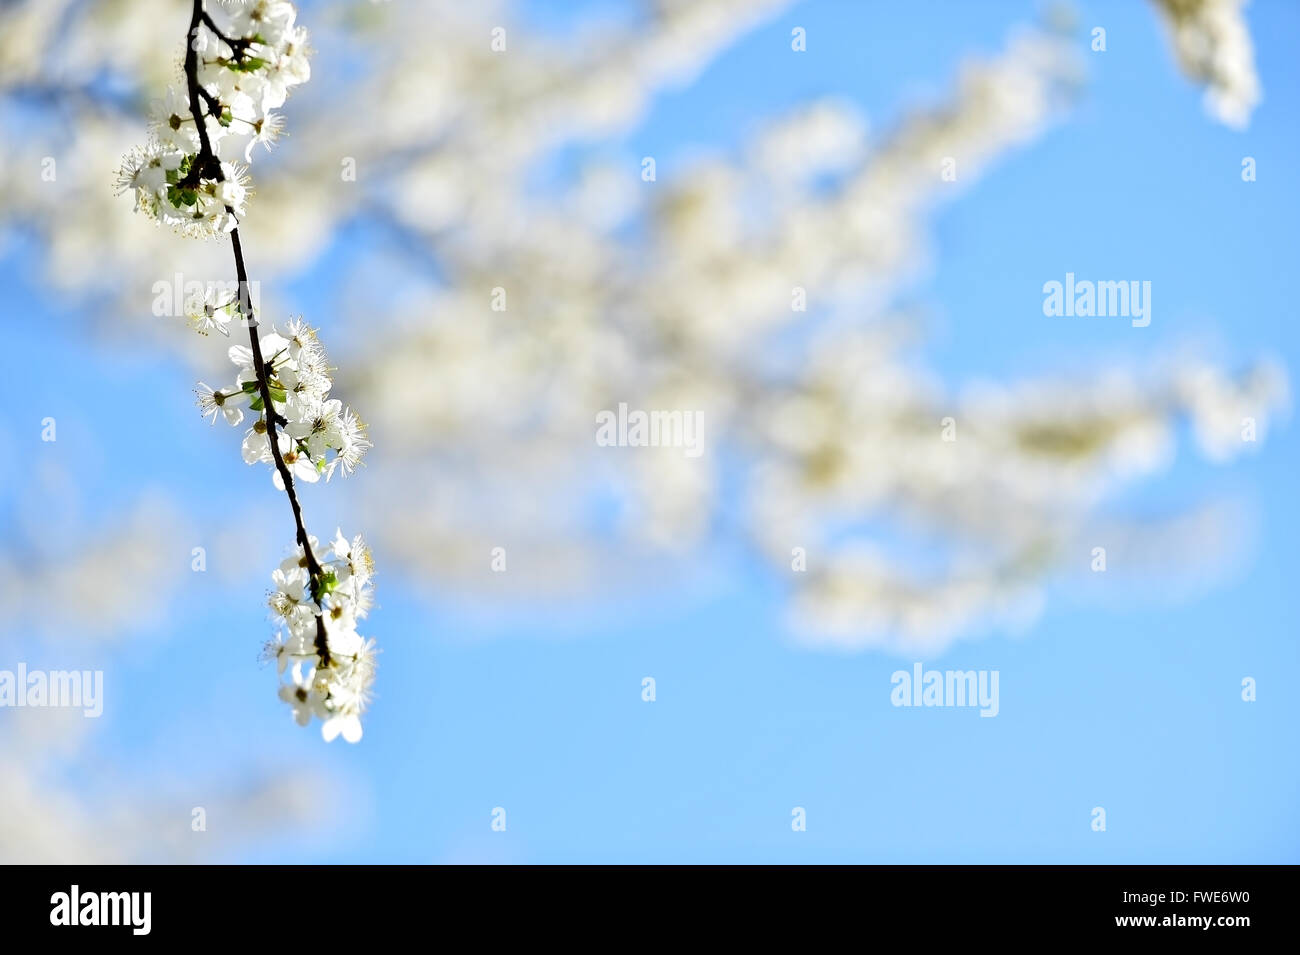 La floraison des fleurs de cerisier blanc sur un arbre abattu contre beau coucher de la lumière Banque D'Images